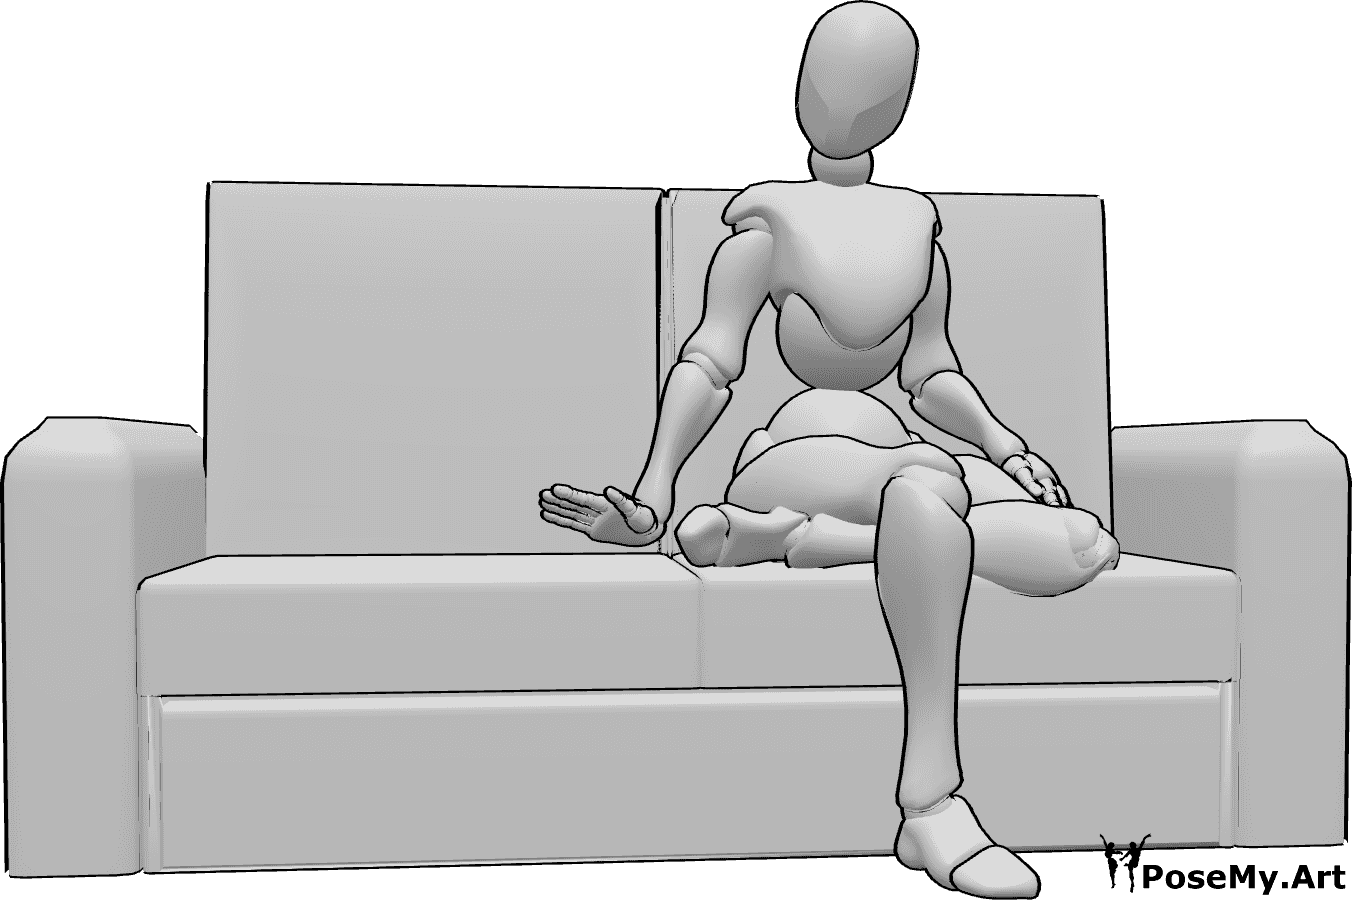 Referencia de poses- Mujer invitando a posar sentada - La mujer está sentada en el sofá con las piernas cruzadas e invitando a tomar asiento